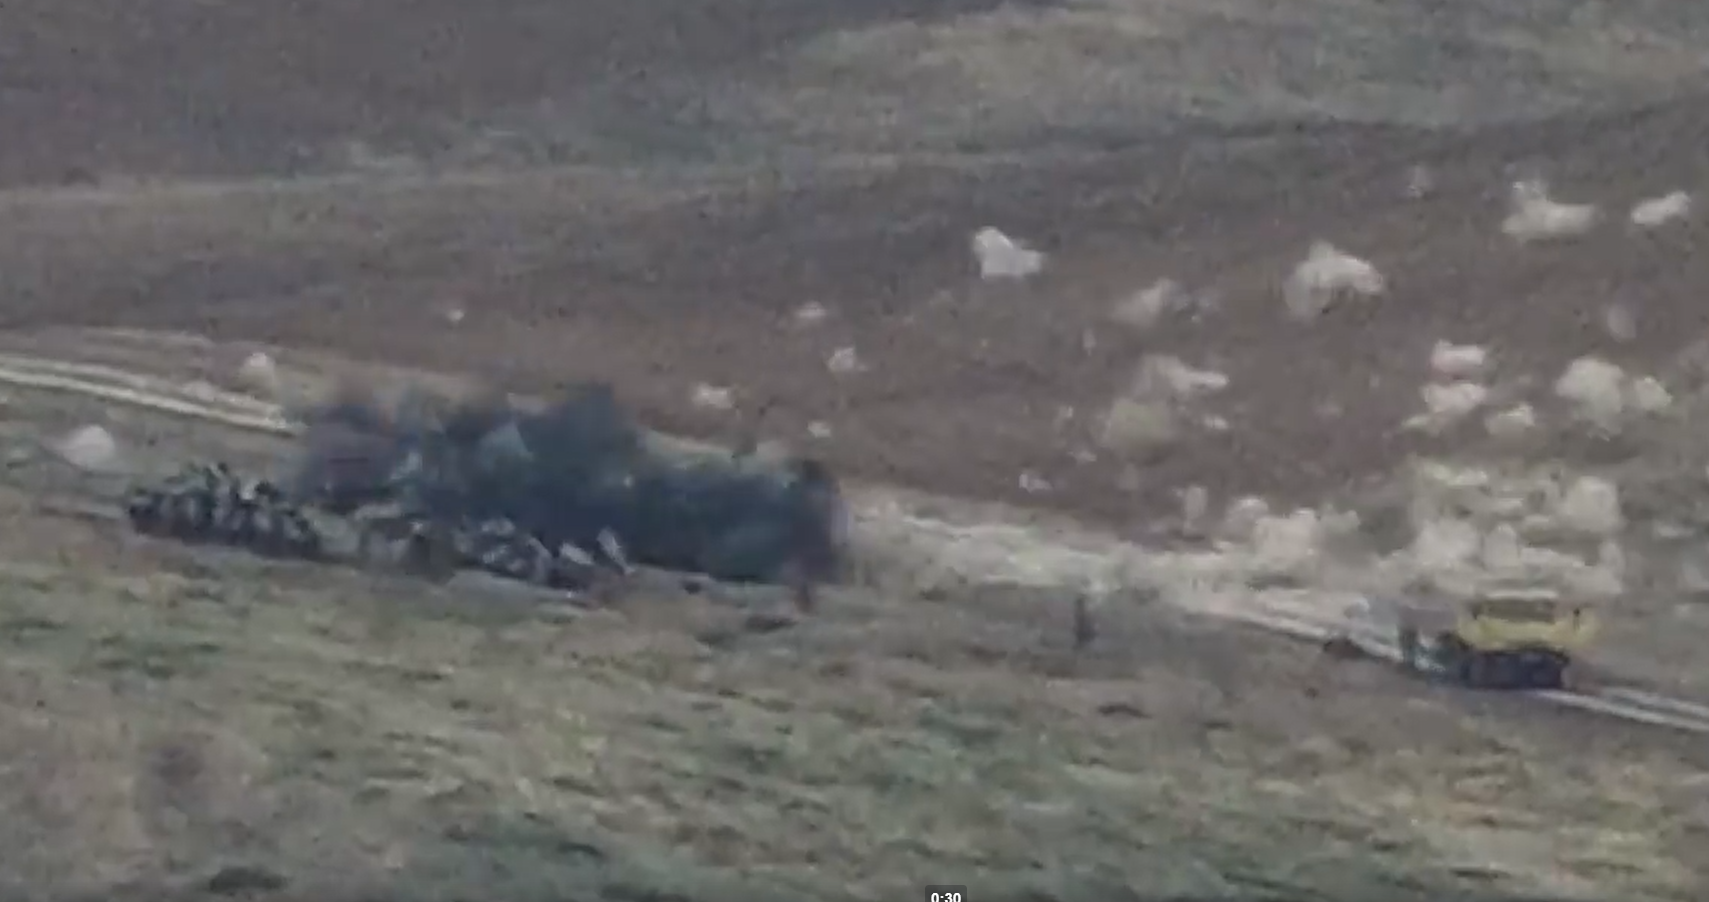 Azerbaycan'ın askeri araçları işte böyle imha ediliyor (video)